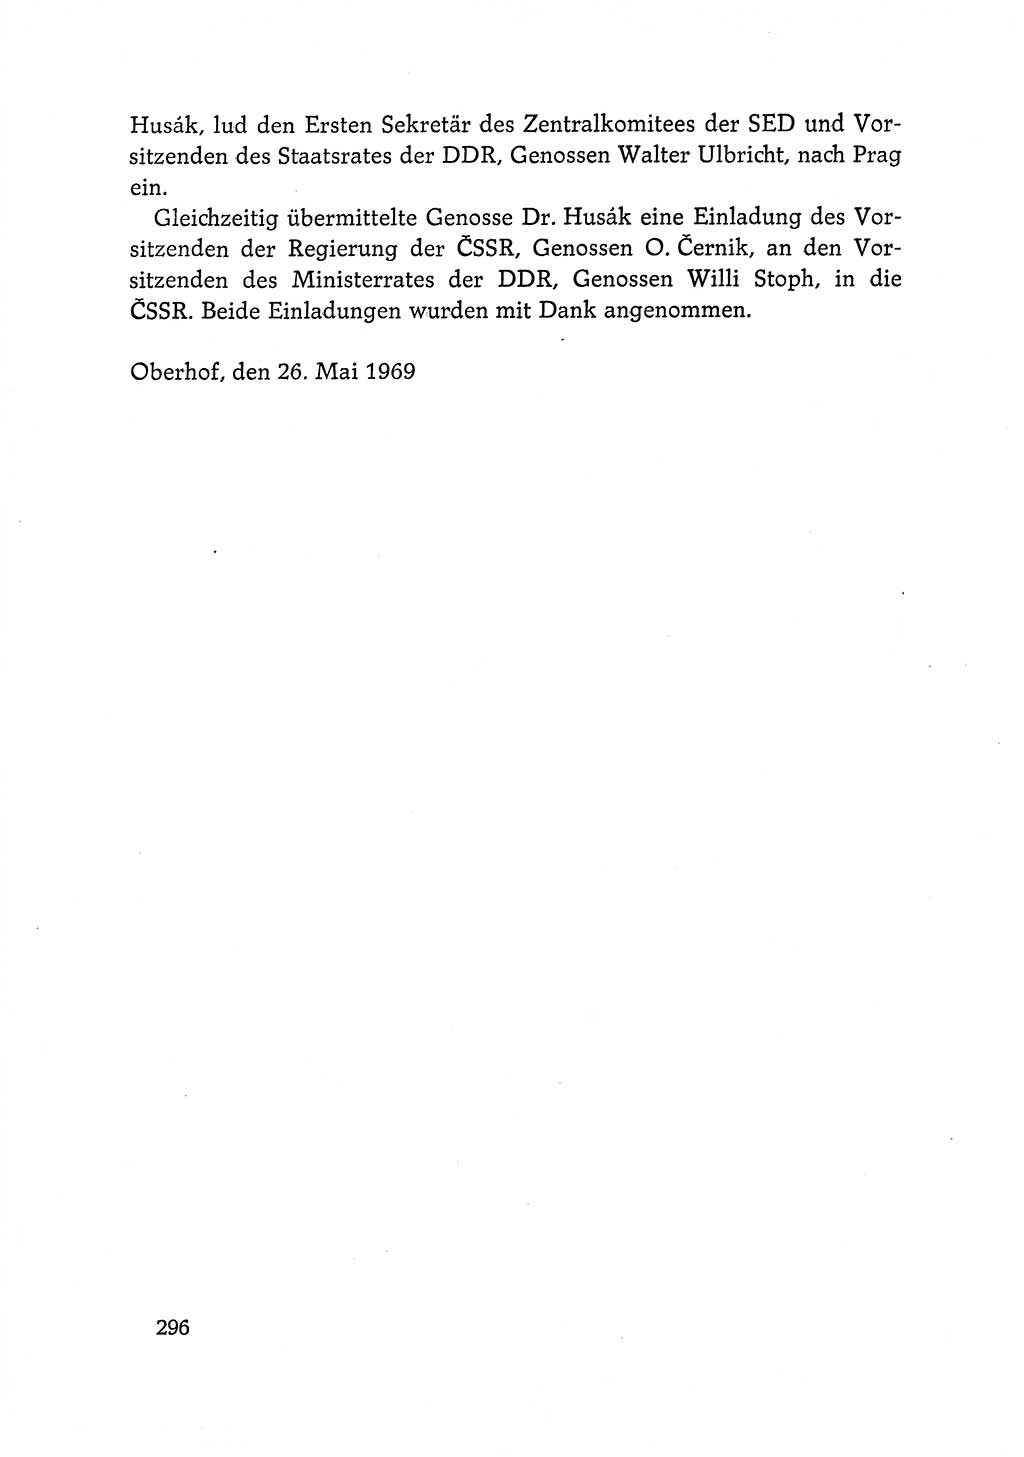 Dokumente der Sozialistischen Einheitspartei Deutschlands (SED) [Deutsche Demokratische Republik (DDR)] 1968-1969, Seite 296 (Dok. SED DDR 1968-1969, S. 296)